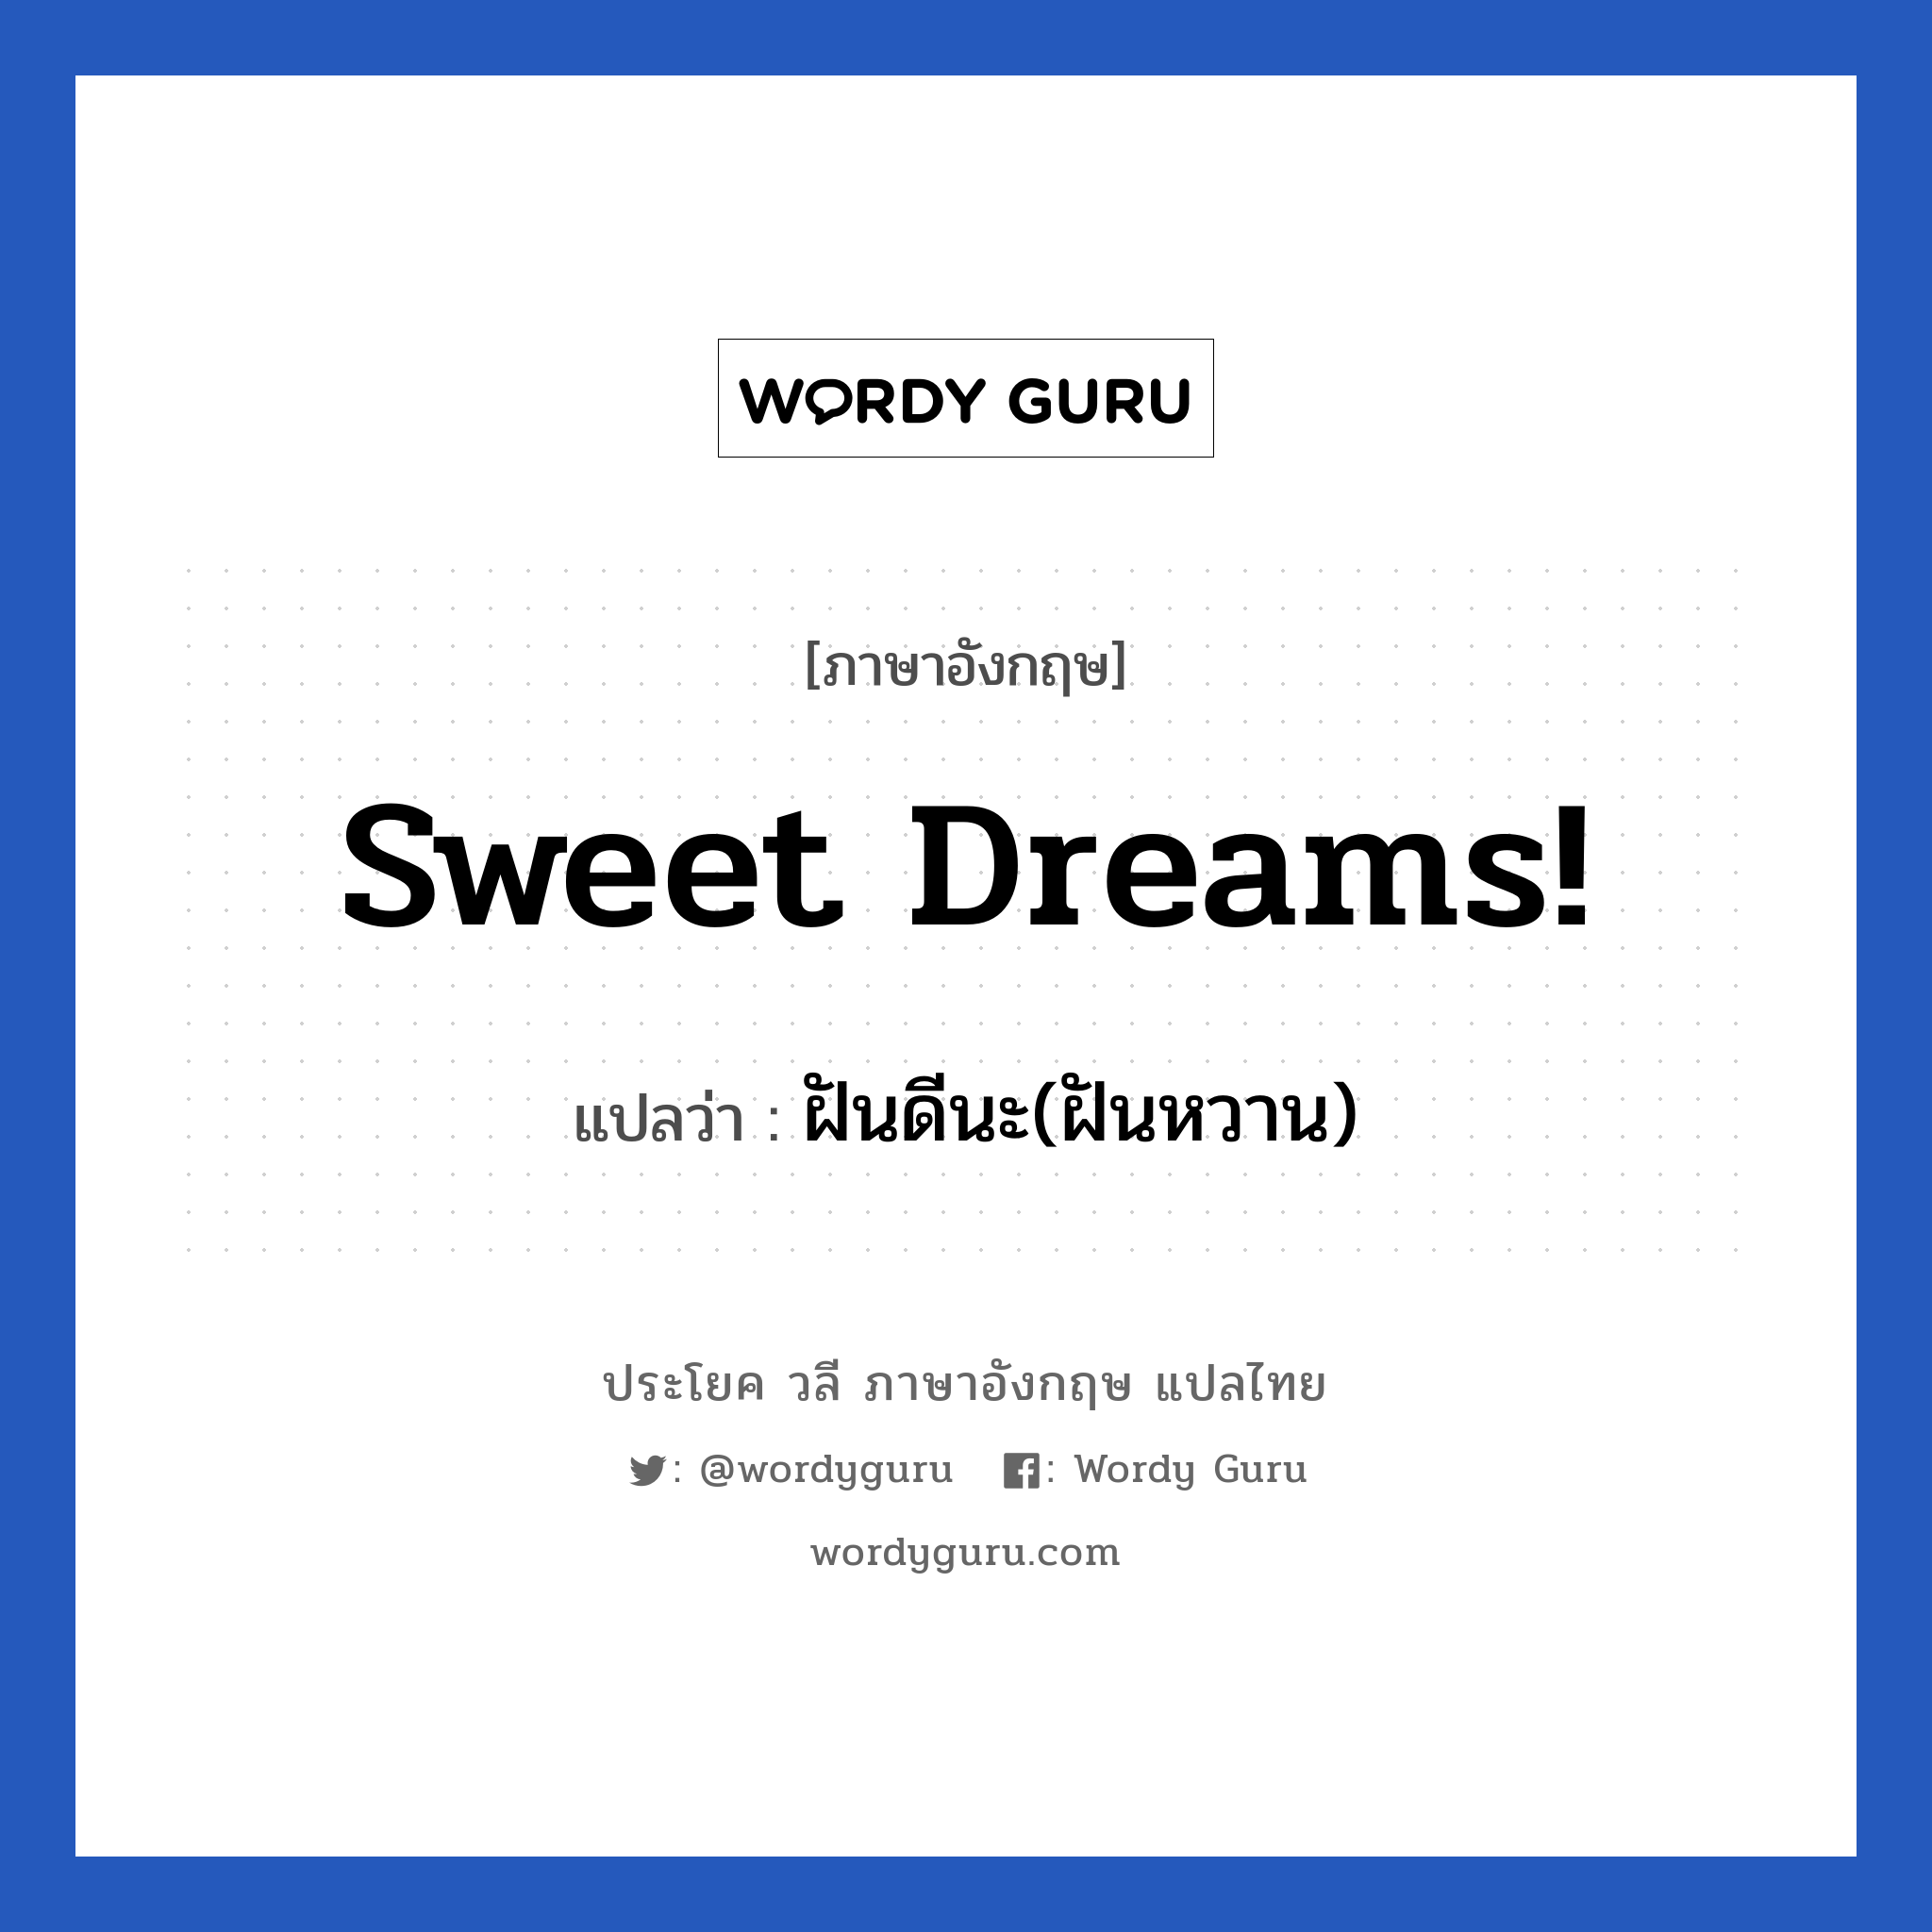 ฝันดีนะ(ฝันหวาน) ภาษาอังกฤษ?, วลีภาษาอังกฤษ ฝันดีนะ(ฝันหวาน) แปลว่า Sweet dreams!